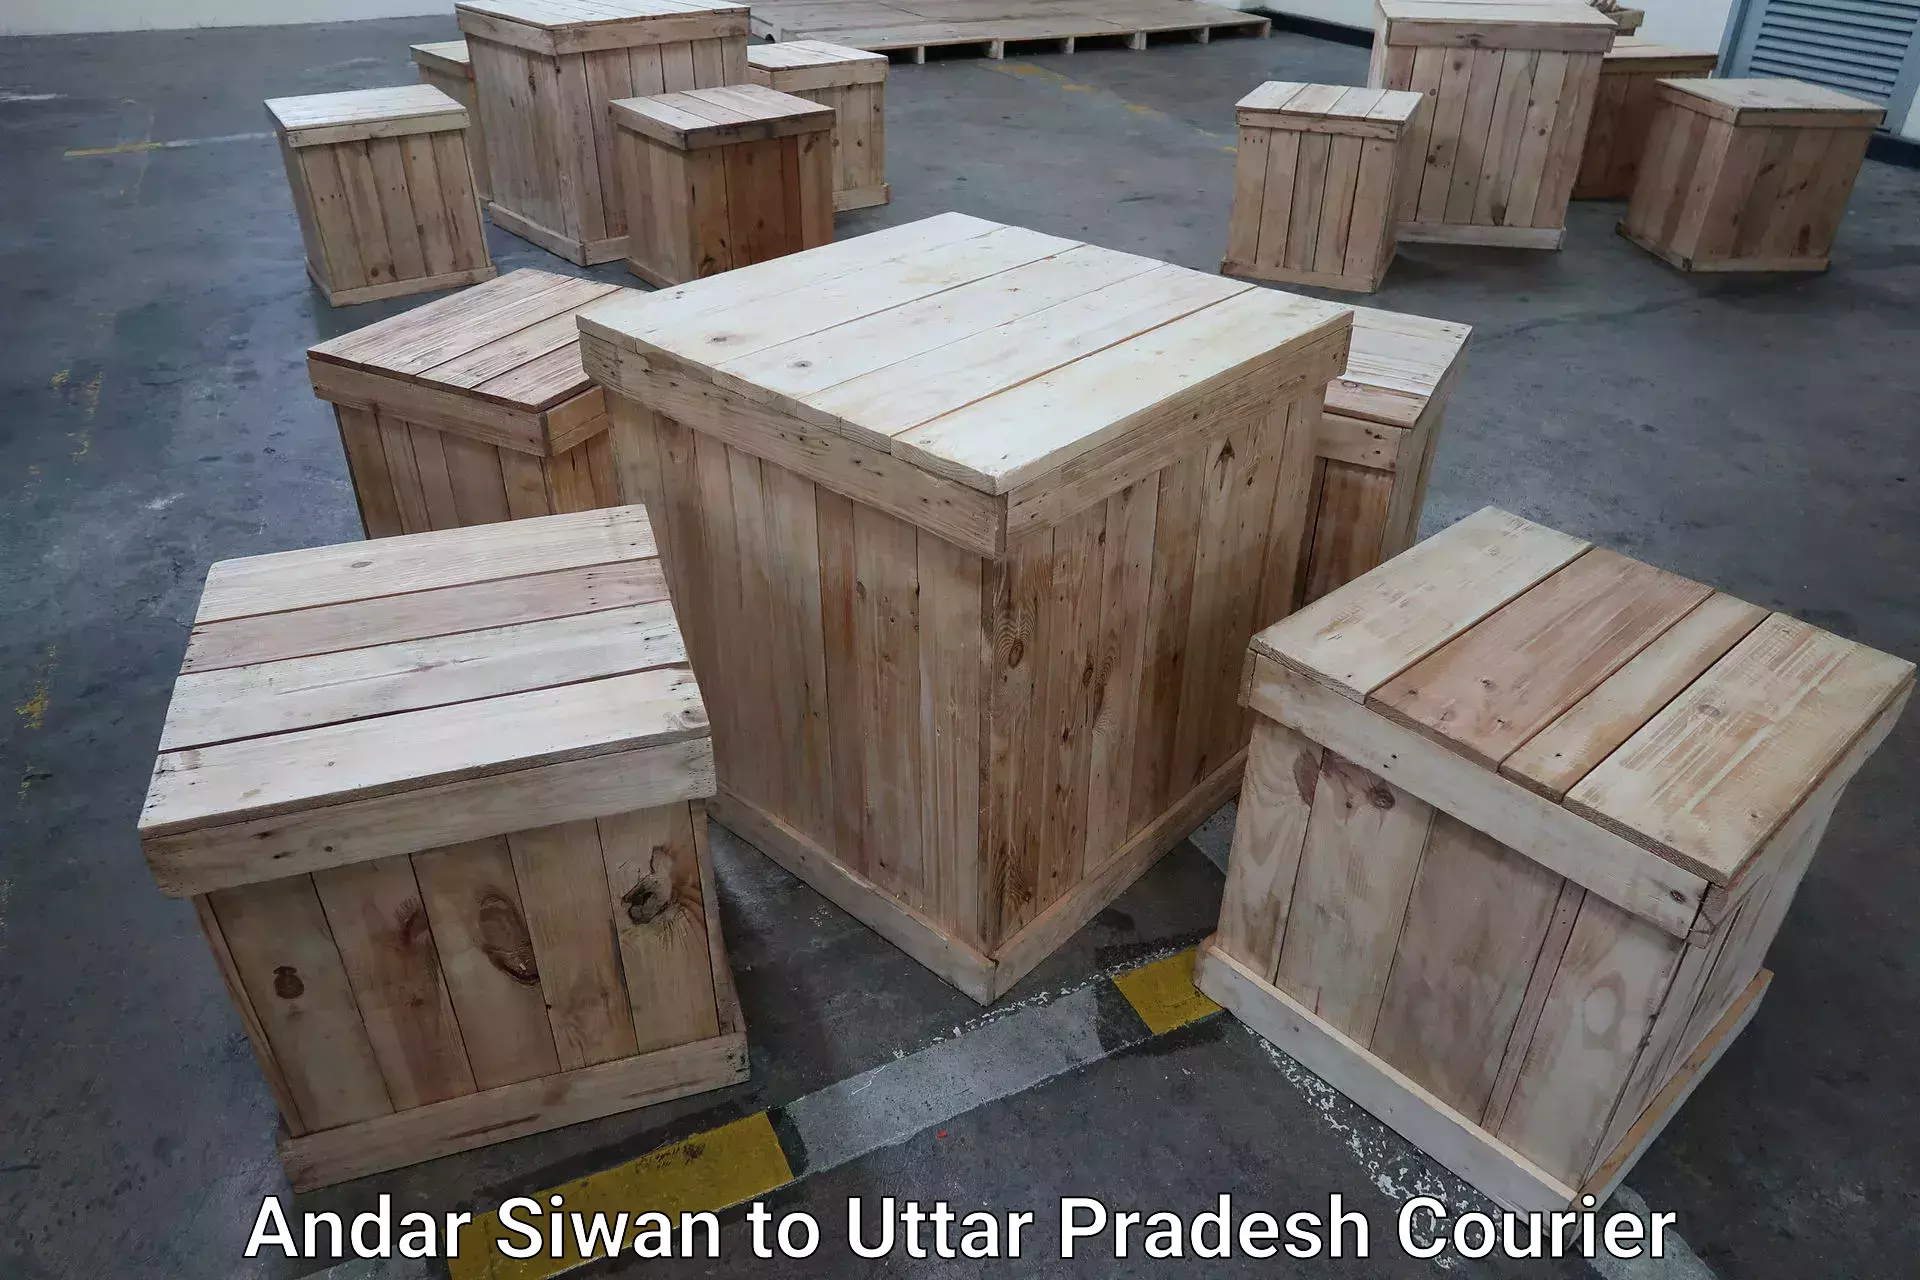 Baggage transport network Andar Siwan to Varanasi